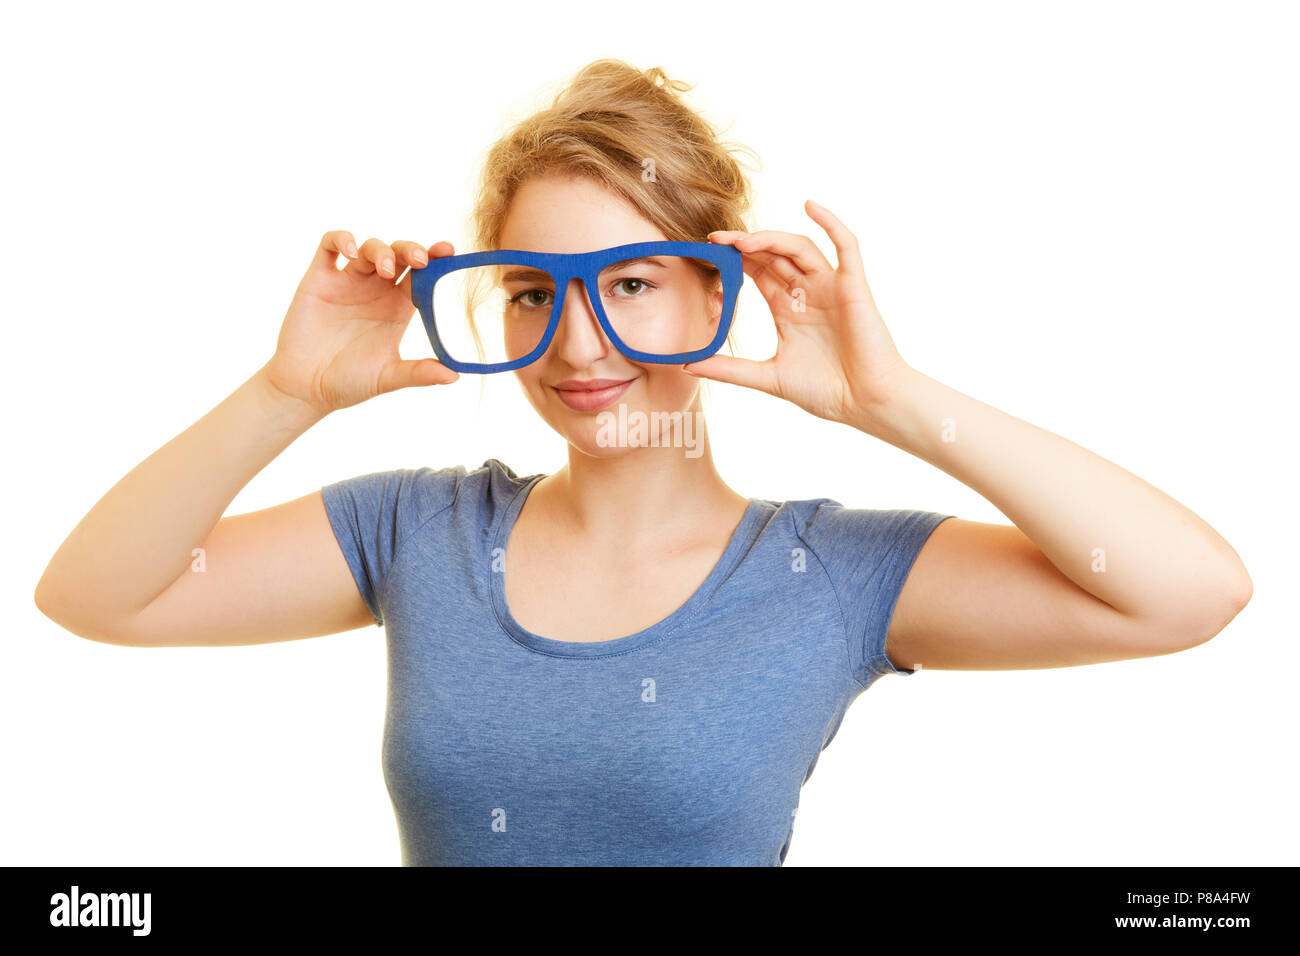 Junge blonde Frau hält Blau große Gläser vor den Augen Stockfoto